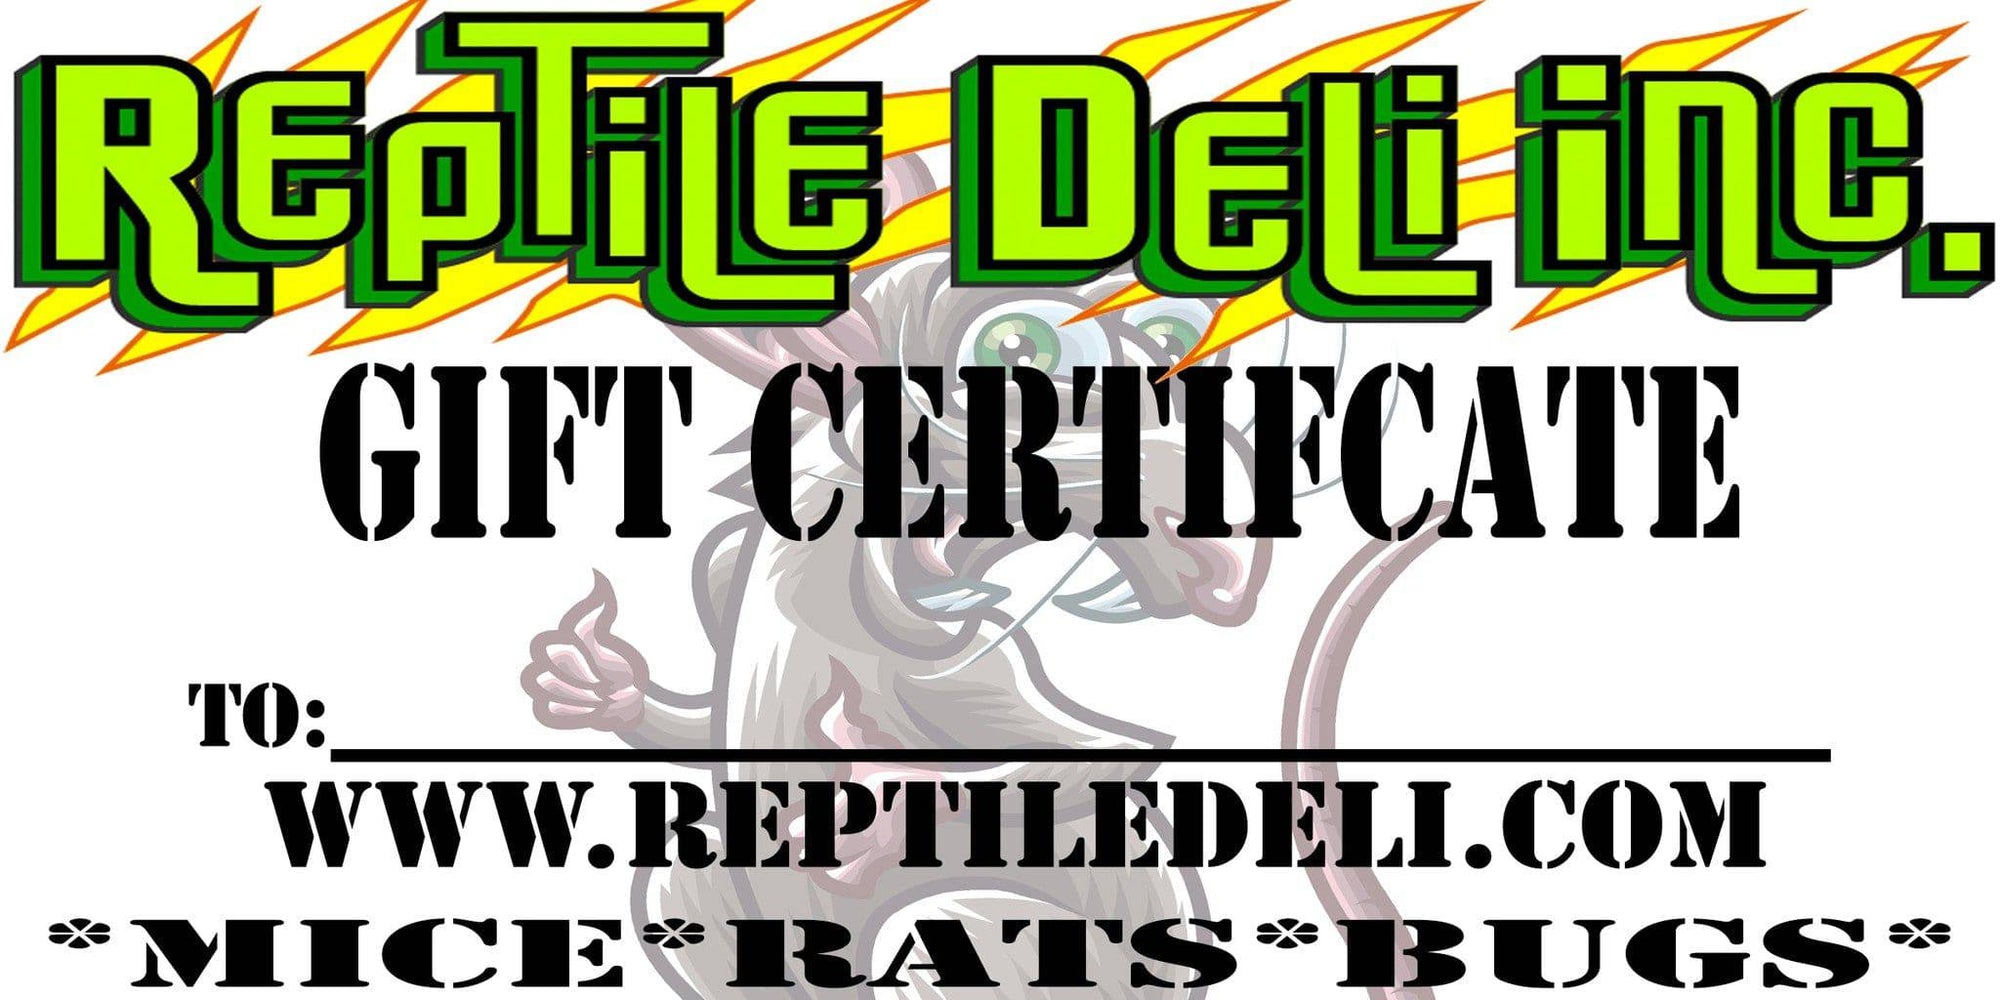 Gift Card - Reptile Deli Inc.